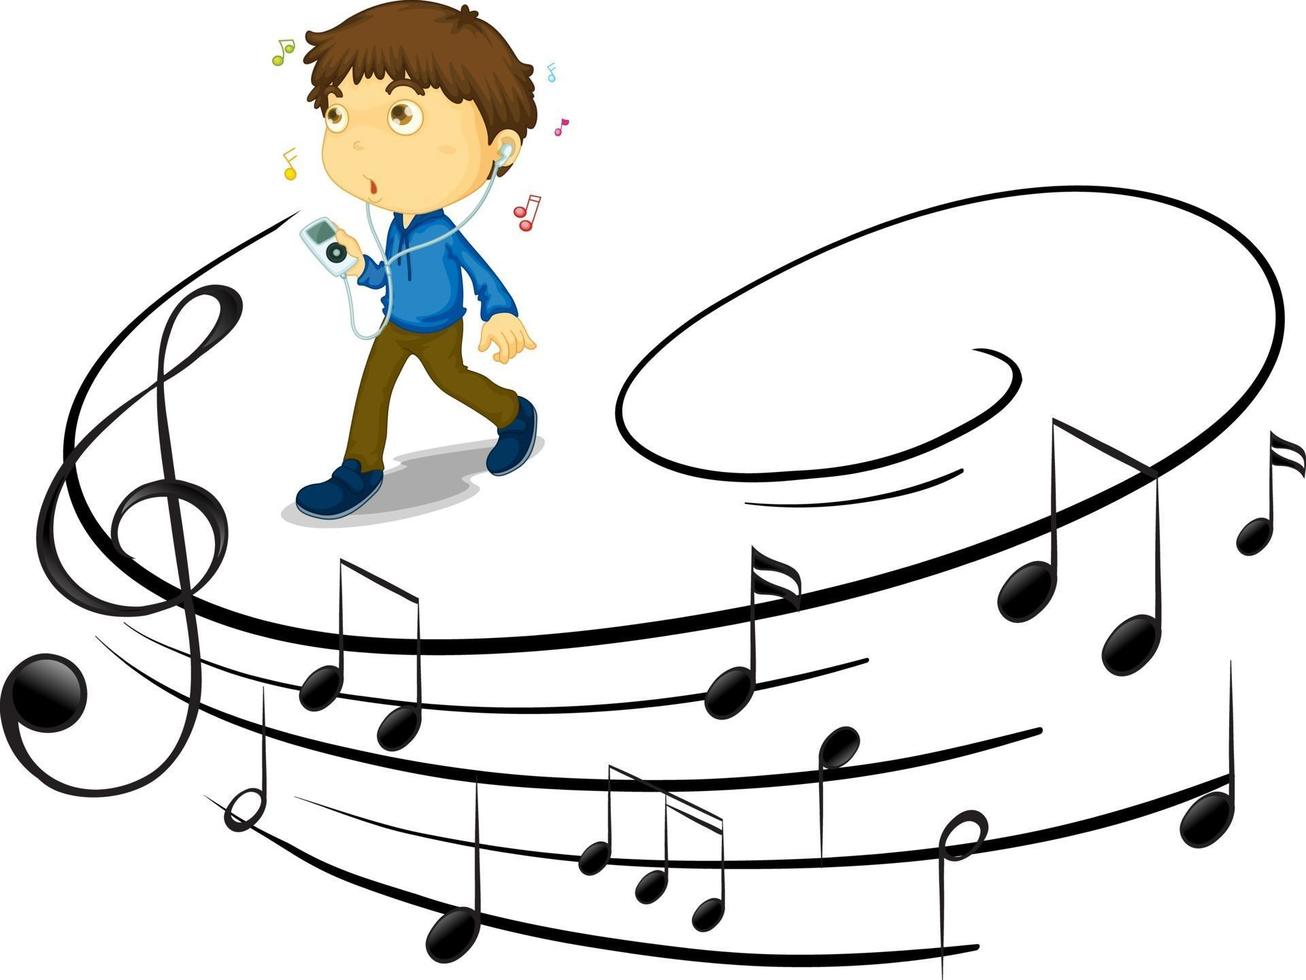 Doodle personaje de dibujos animados de un joven escuchando música con símbolos de melodía musical vector